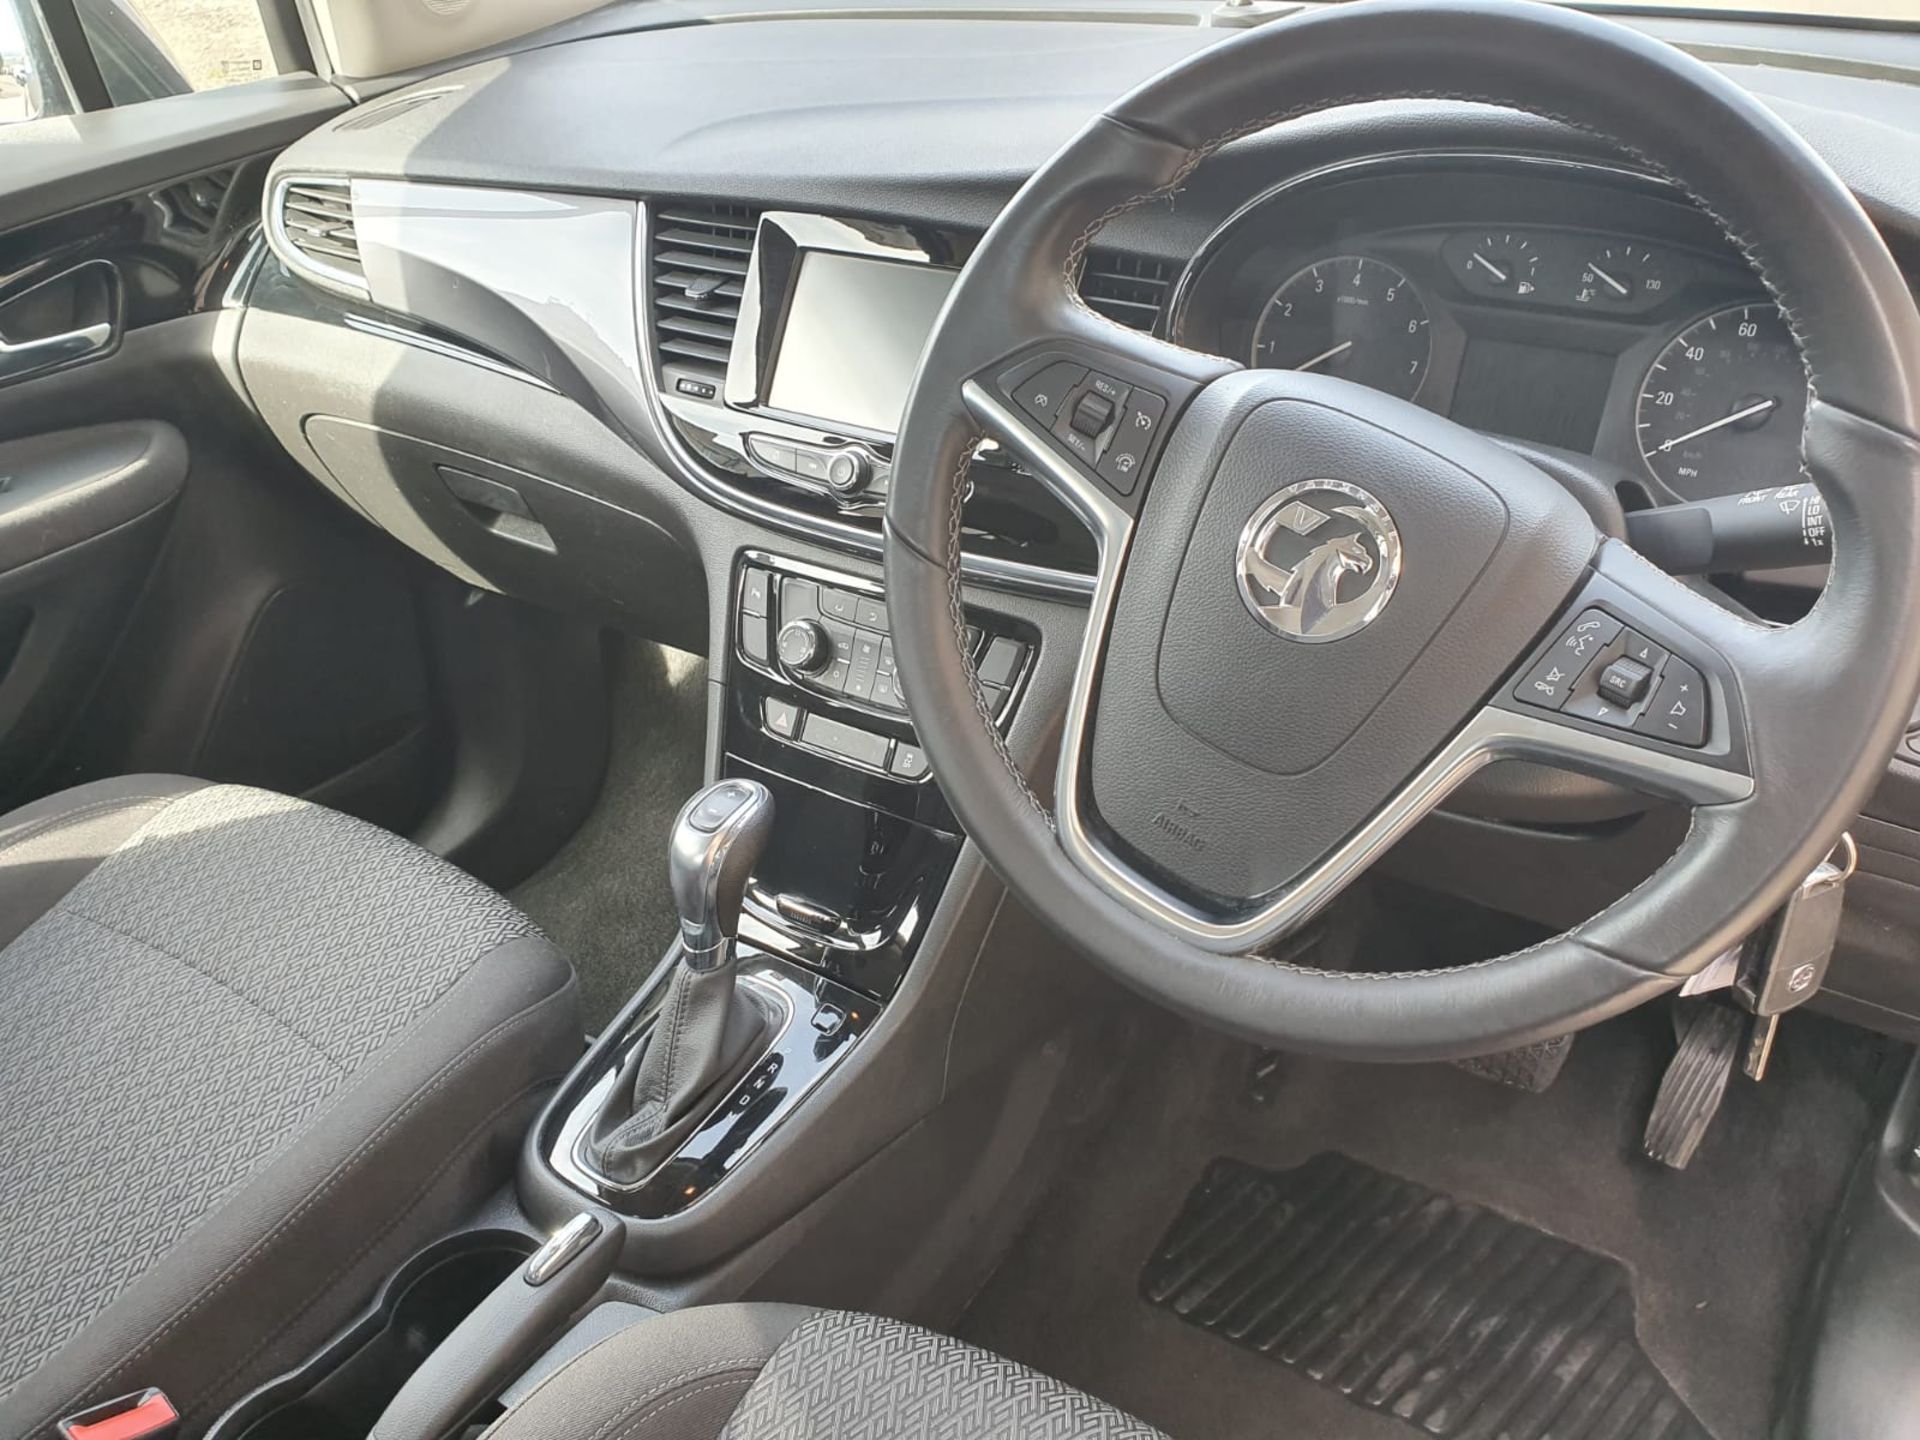 2018, Vauxhall Mokka, Facelift Hatchback 1.4 Petrol - Image 17 of 20